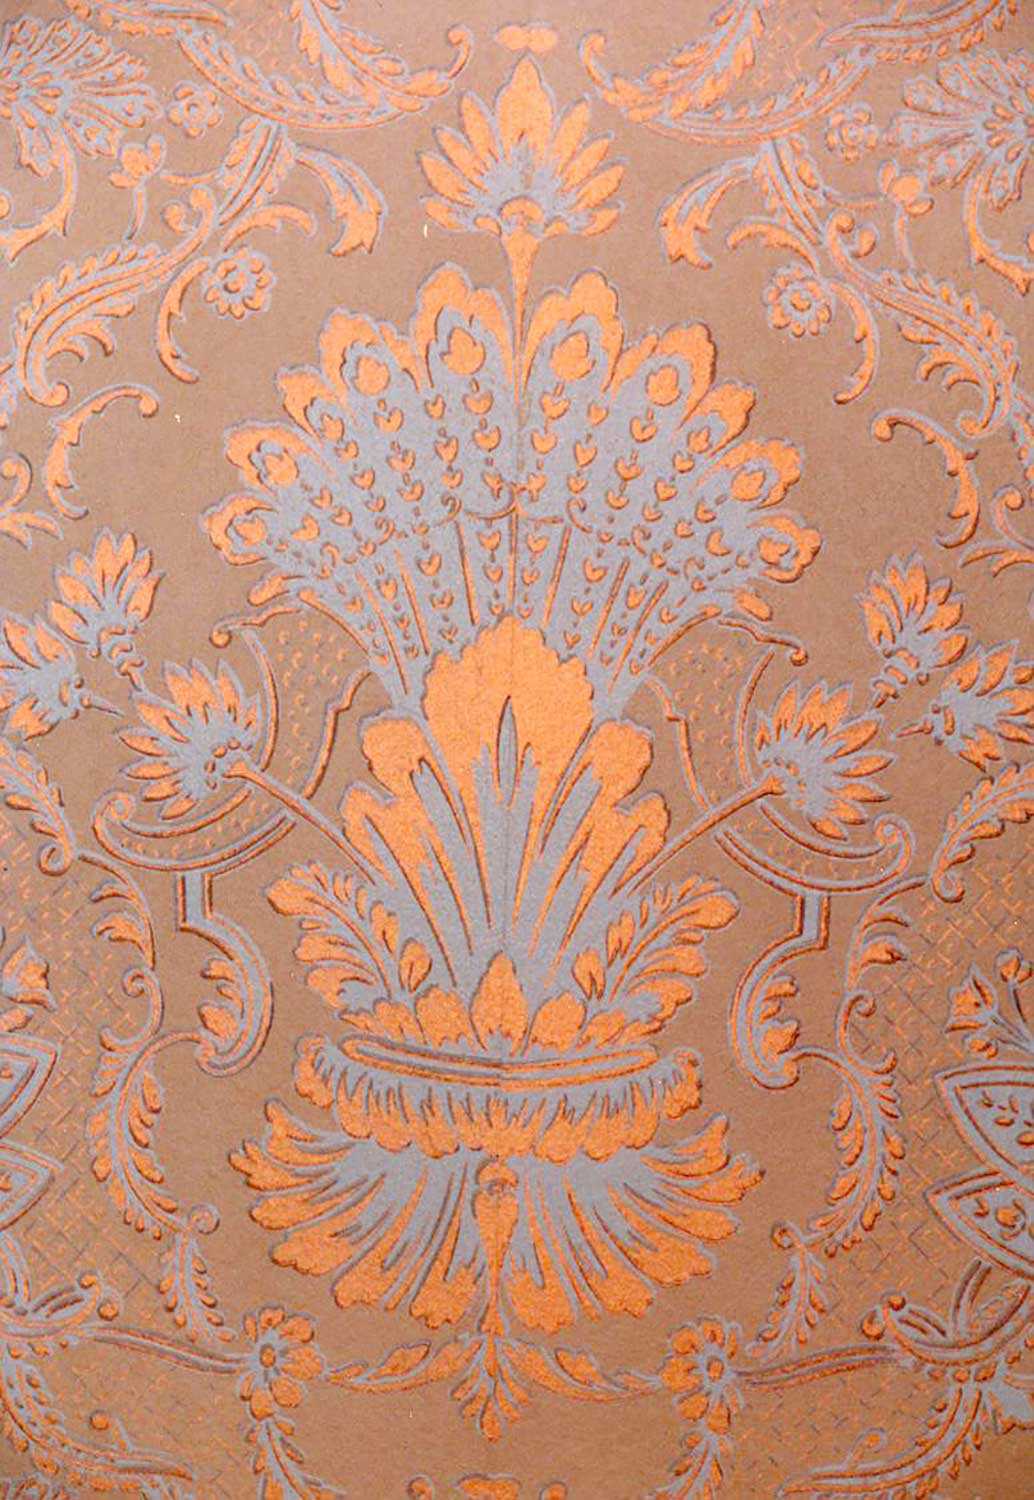 Détails de la reproduction du papier peint du hall central de la Maison George Brown